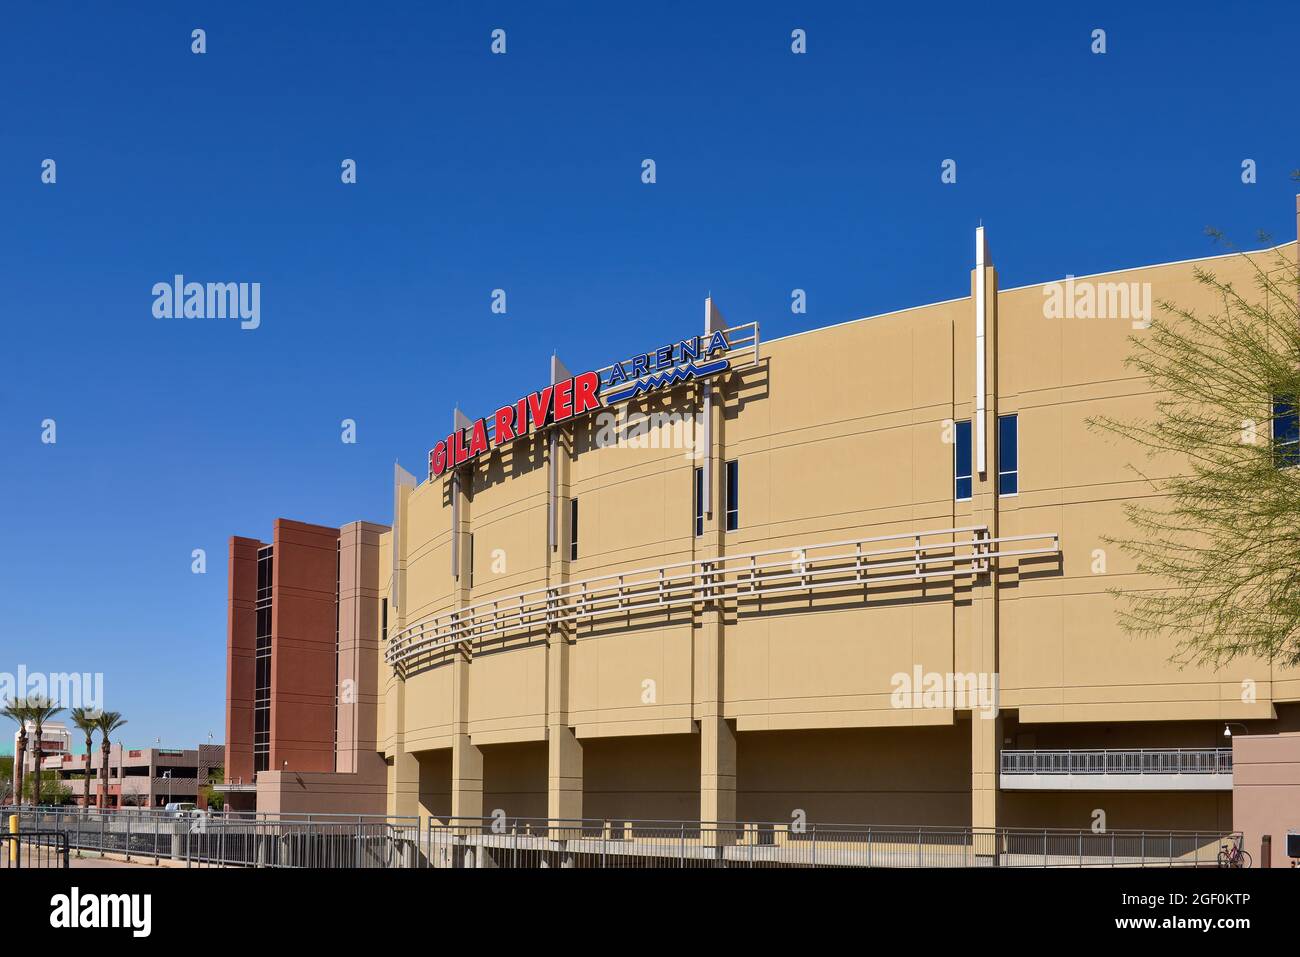 Glendale, AZ, USA - 25. Februar 2016: Die Gila River Arena, Heimat des NHL-Teams Arizona Coyotes seit 2003, nachdem sie aus der Innenstadt von Phoenix umzog. Stockfoto